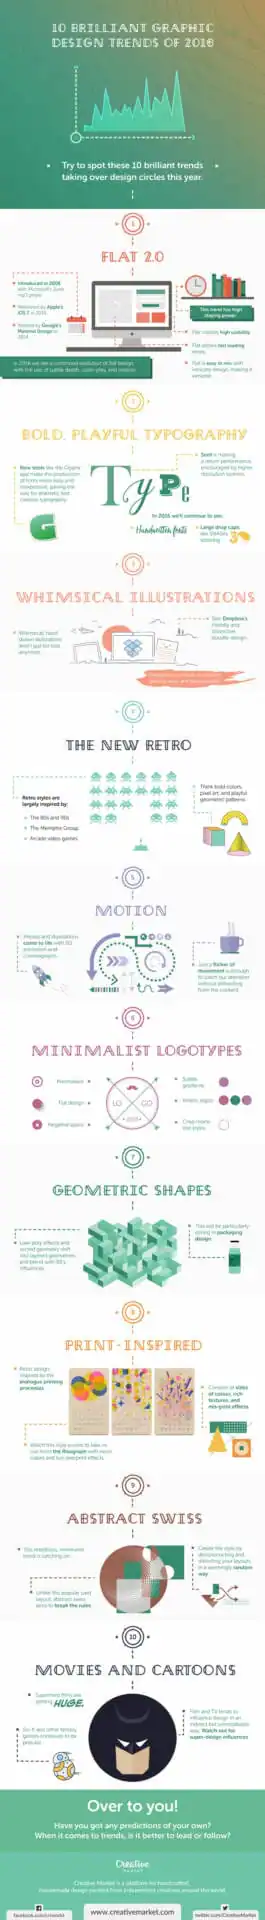 10-Brilliant-Graphic-Design-Trends-2016-Infographic